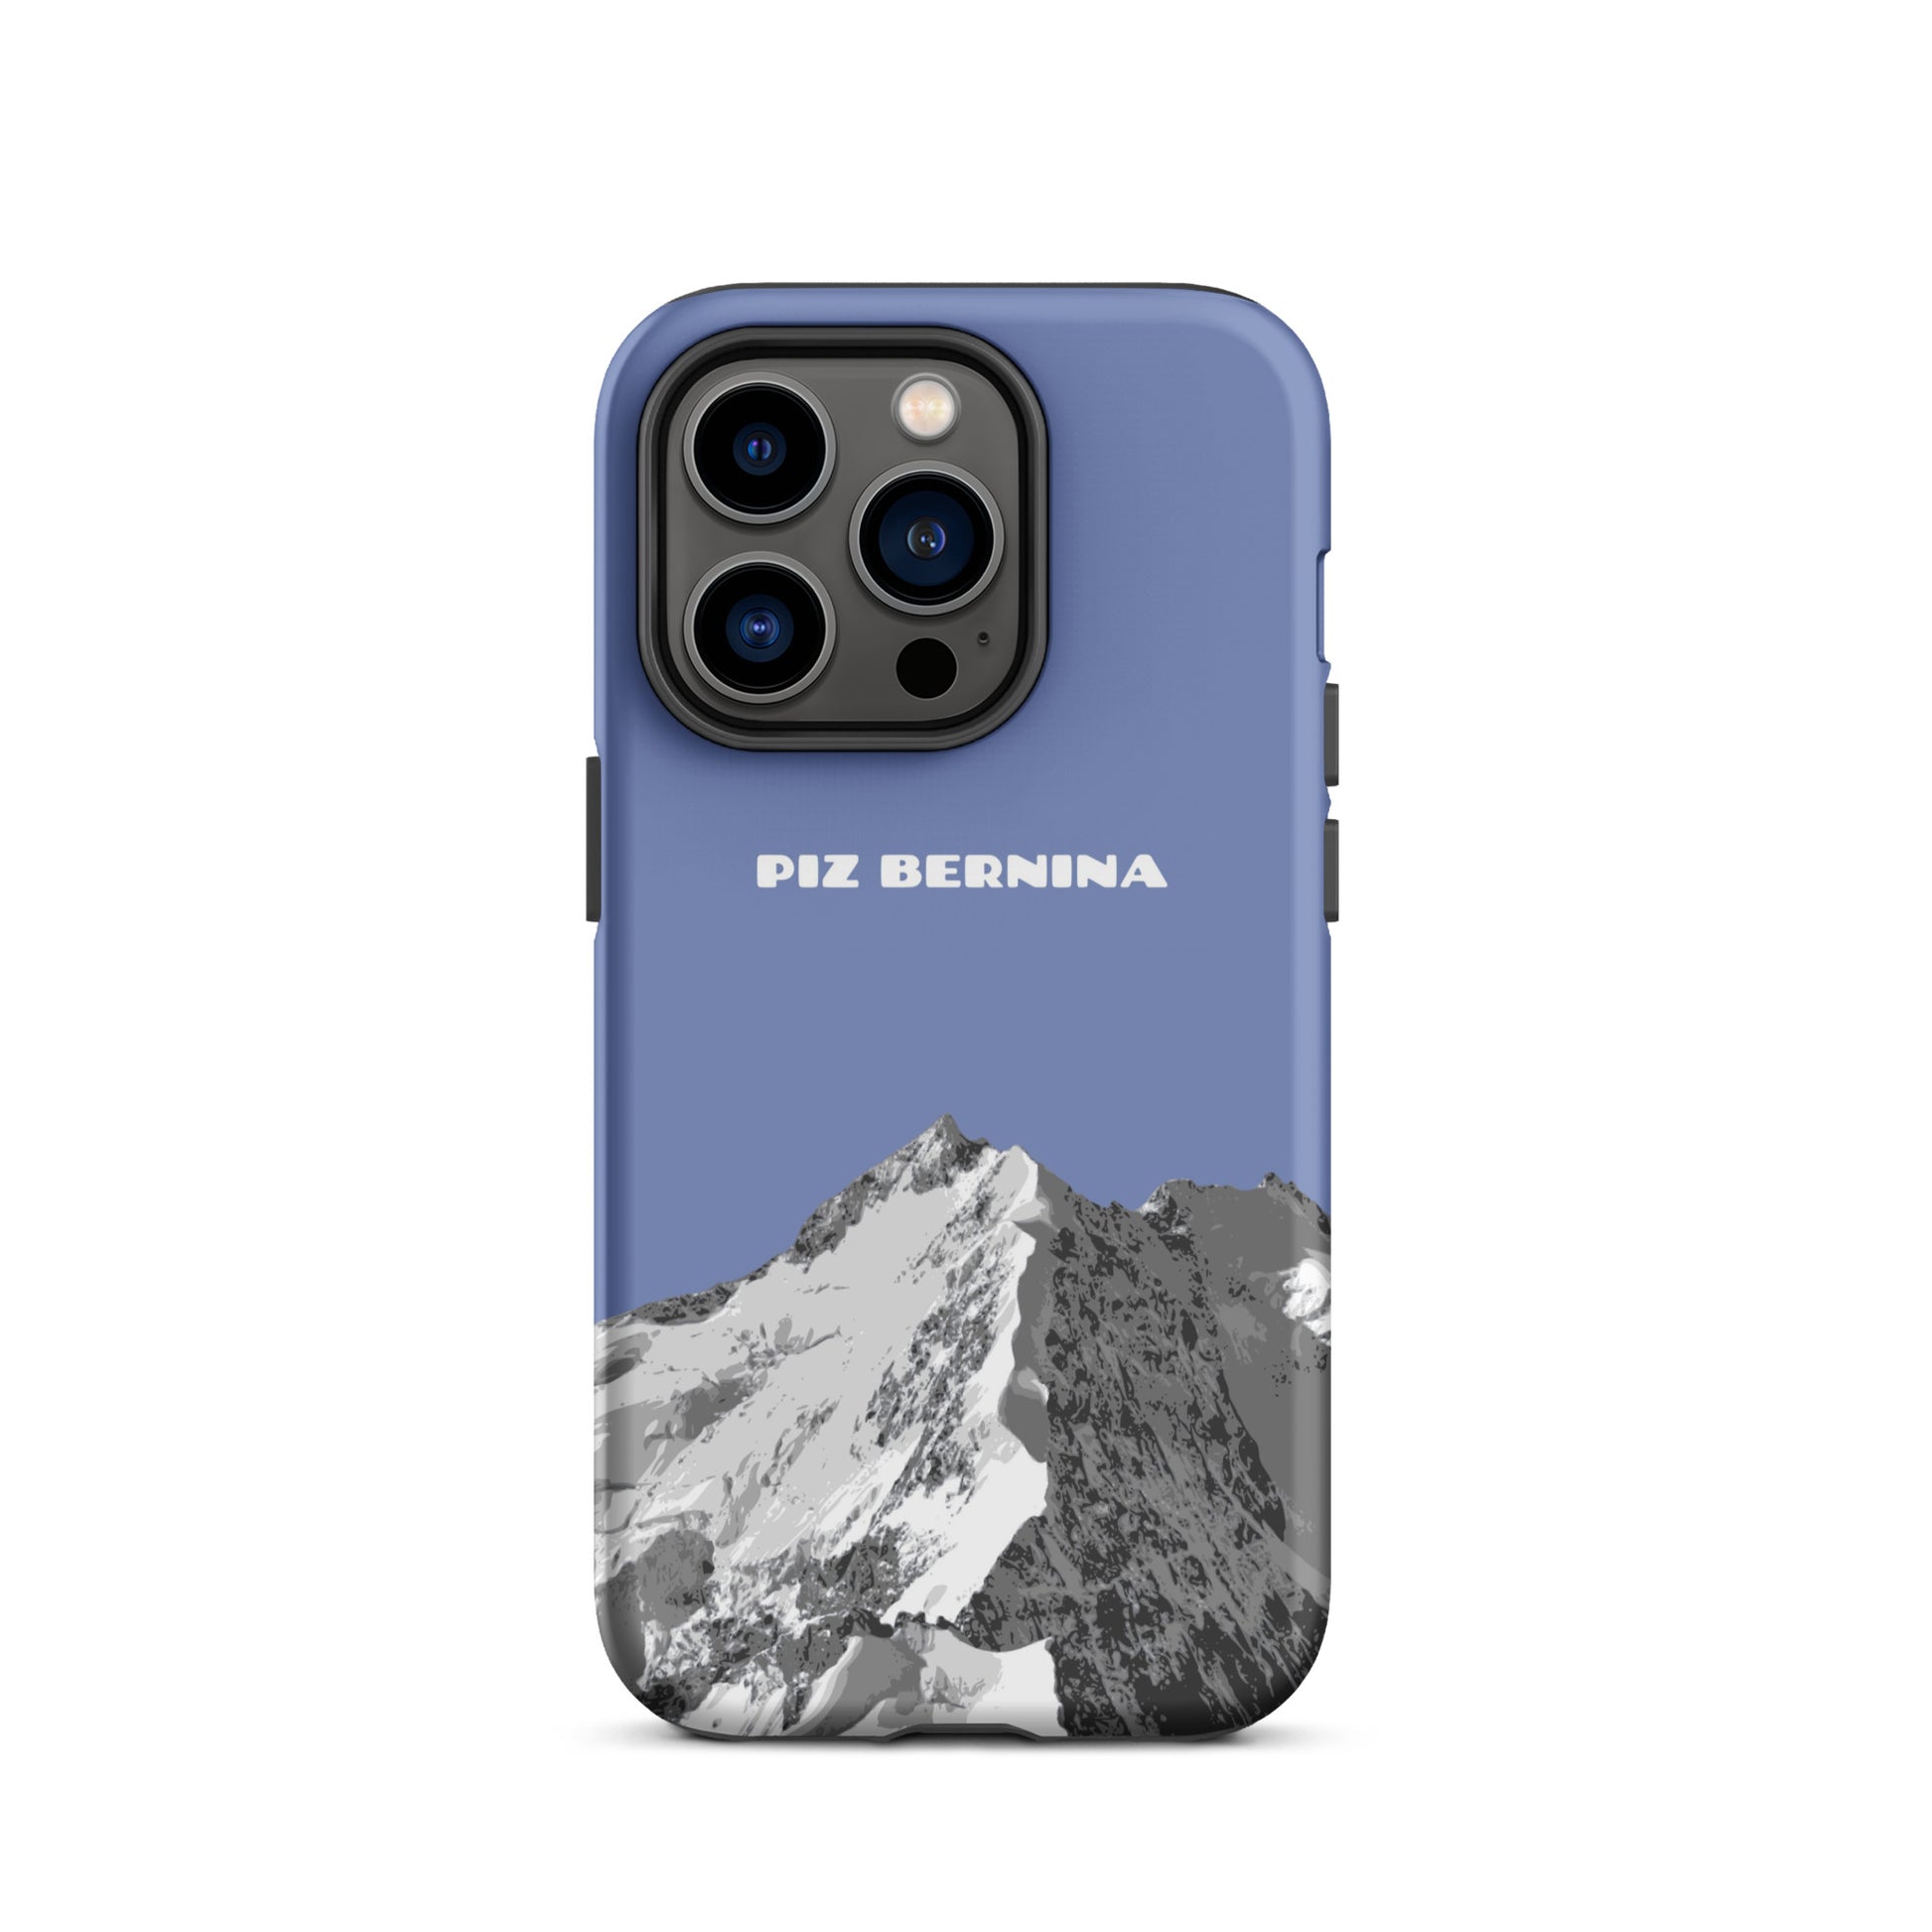 Hülle für das iPhone 14 Pro von Apple in der Farbe Pastellblau, dass den Piz Bernina in Graubünden zeigt.